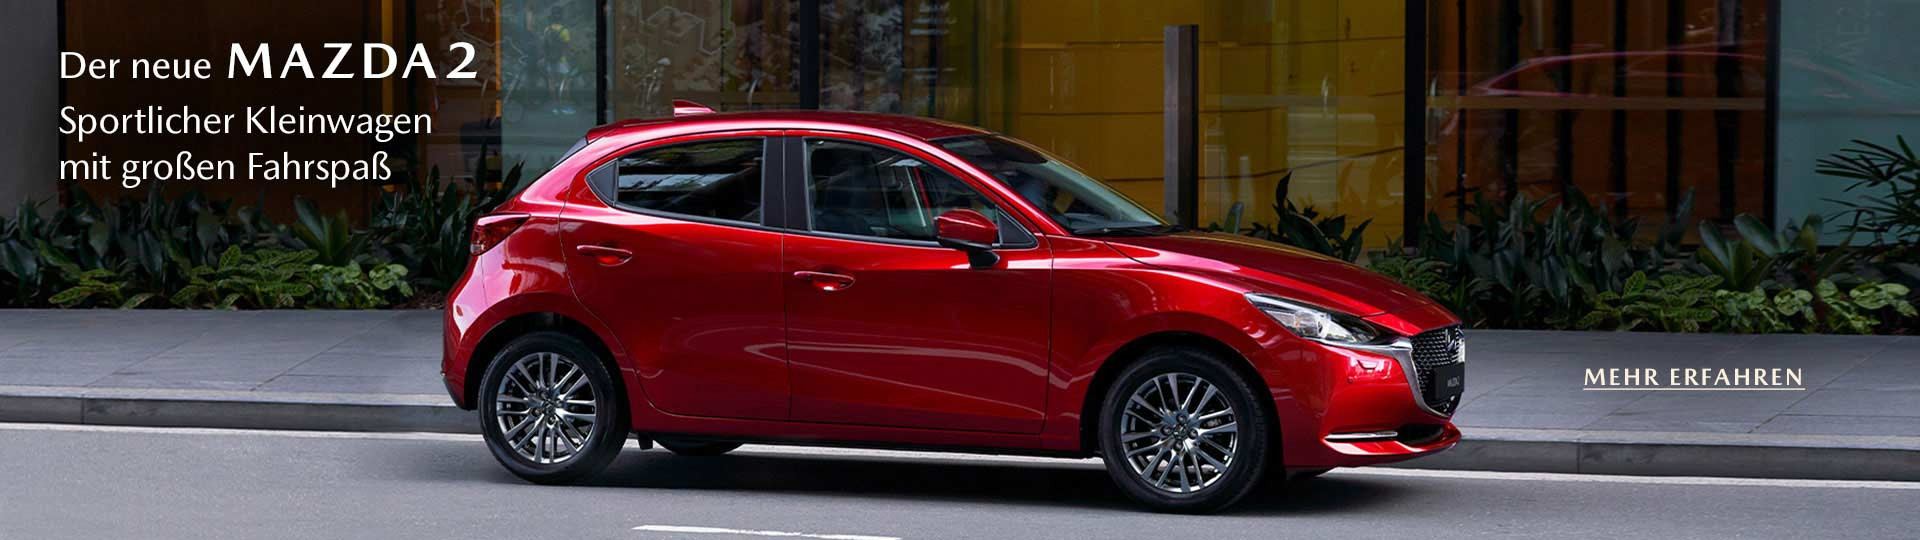 Mazda2 Facelift 2020 in Magmarot Metallic, Seitenansicht. Text: "Der neue Mazda 2, Sportlicher Kleinwagen mit großem Fahrspaß. Mehr erfahren"